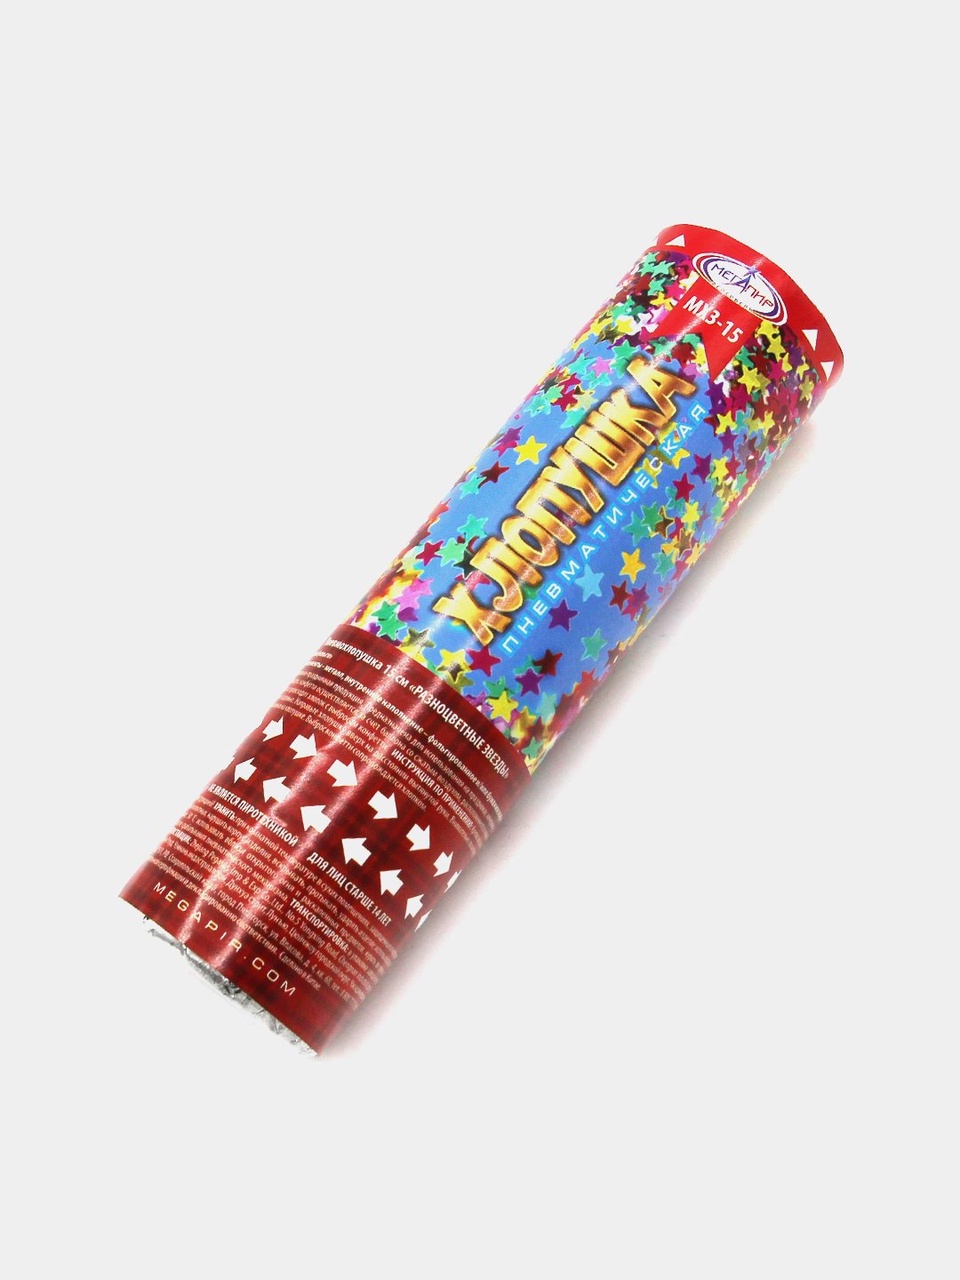 Пневматическая хлопушка 15 см конфетти разноцветные звезды из фольги МХ3-15 - 170 ₽, заказать онлайн.